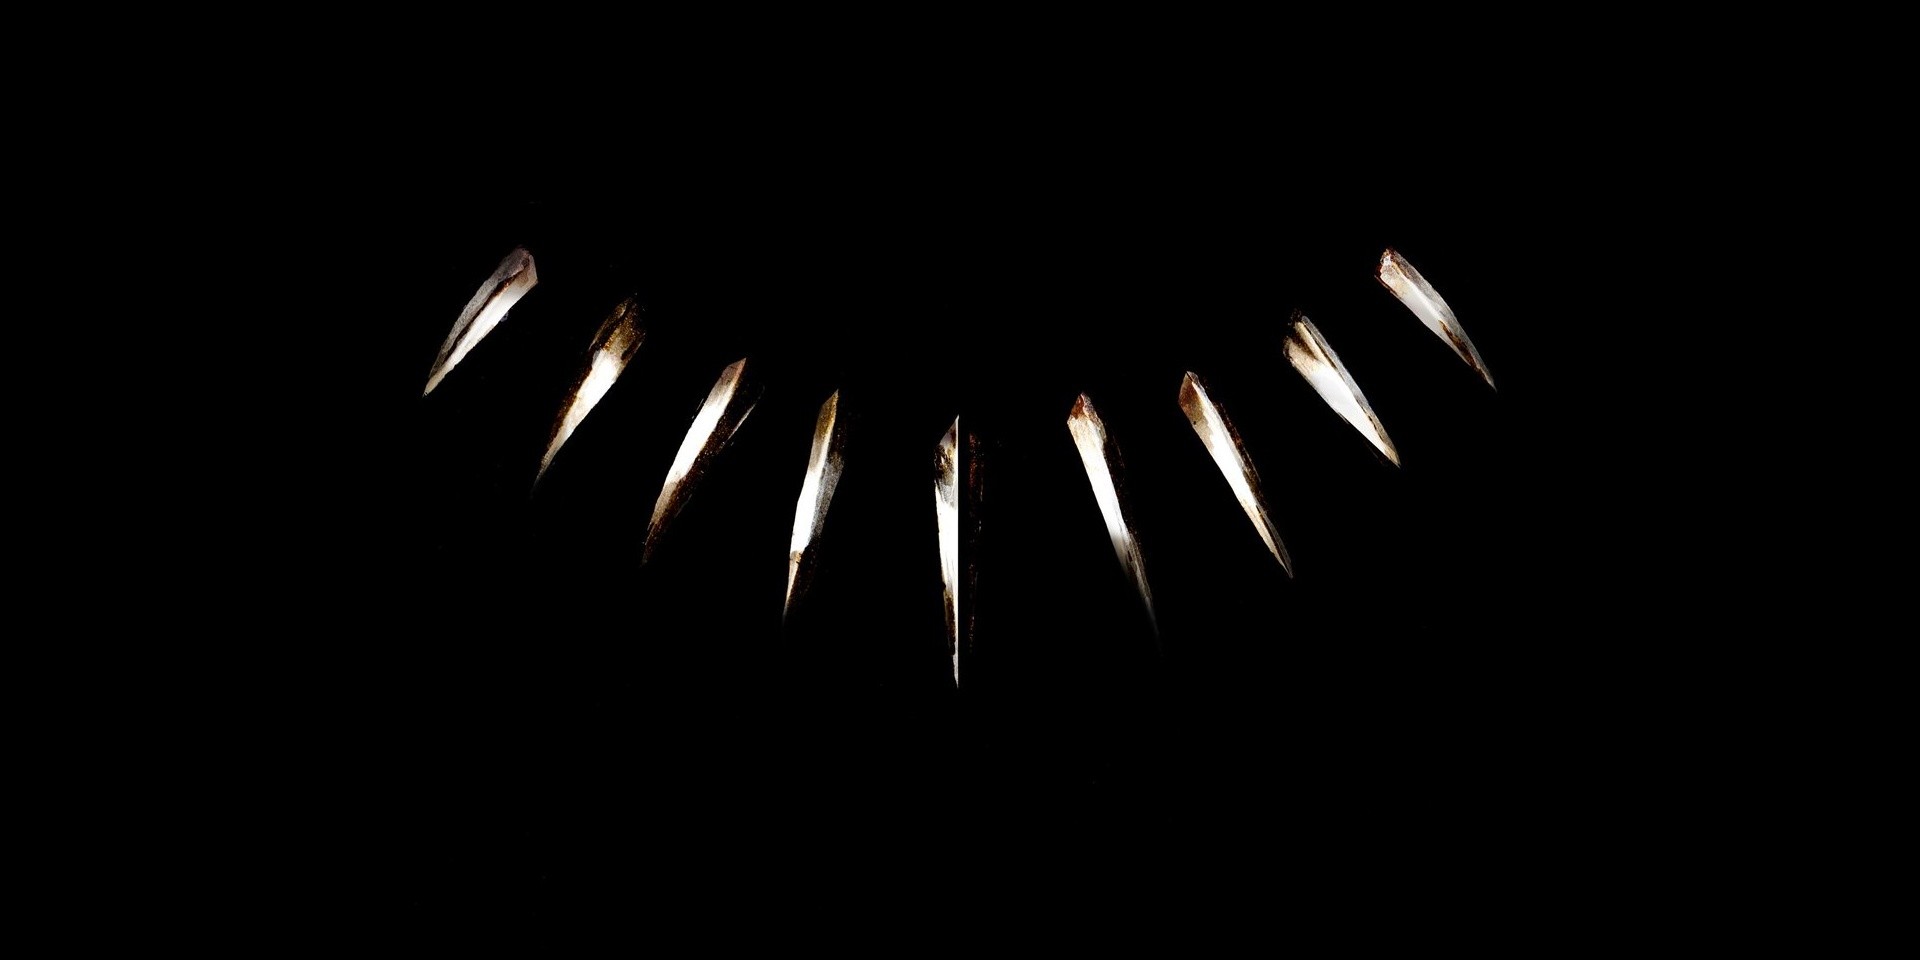 Kendrick Lamar unveils tracklist for Black Panther soundtrack